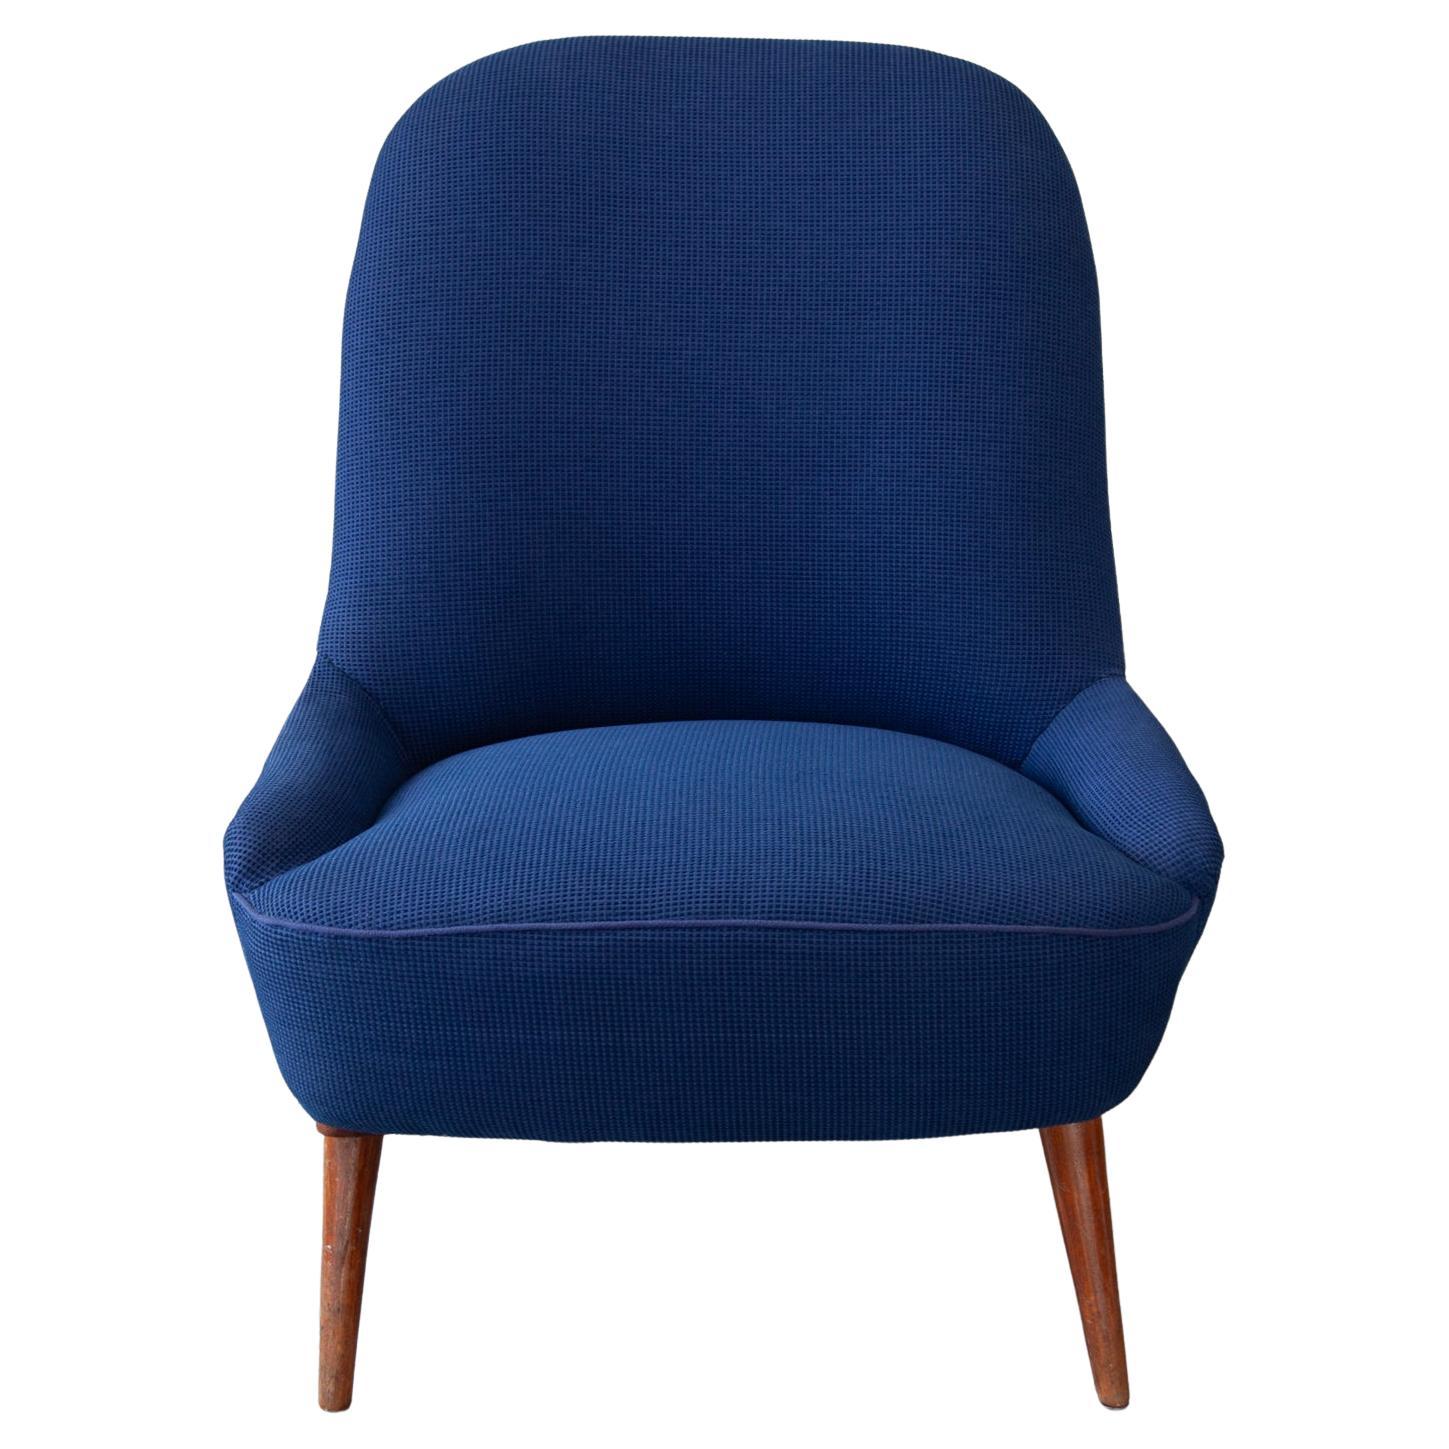 Mid Century Lounge Stuhl in original Vintage blauer Wolle und Teakholz konischen Beinen, Dänemark 1950's. Sehr bequem zu sitzen. Wunderschöne elegante Linien und Kurven nach einer großen skandinavischen Designidee. Loungesessel in perfektem